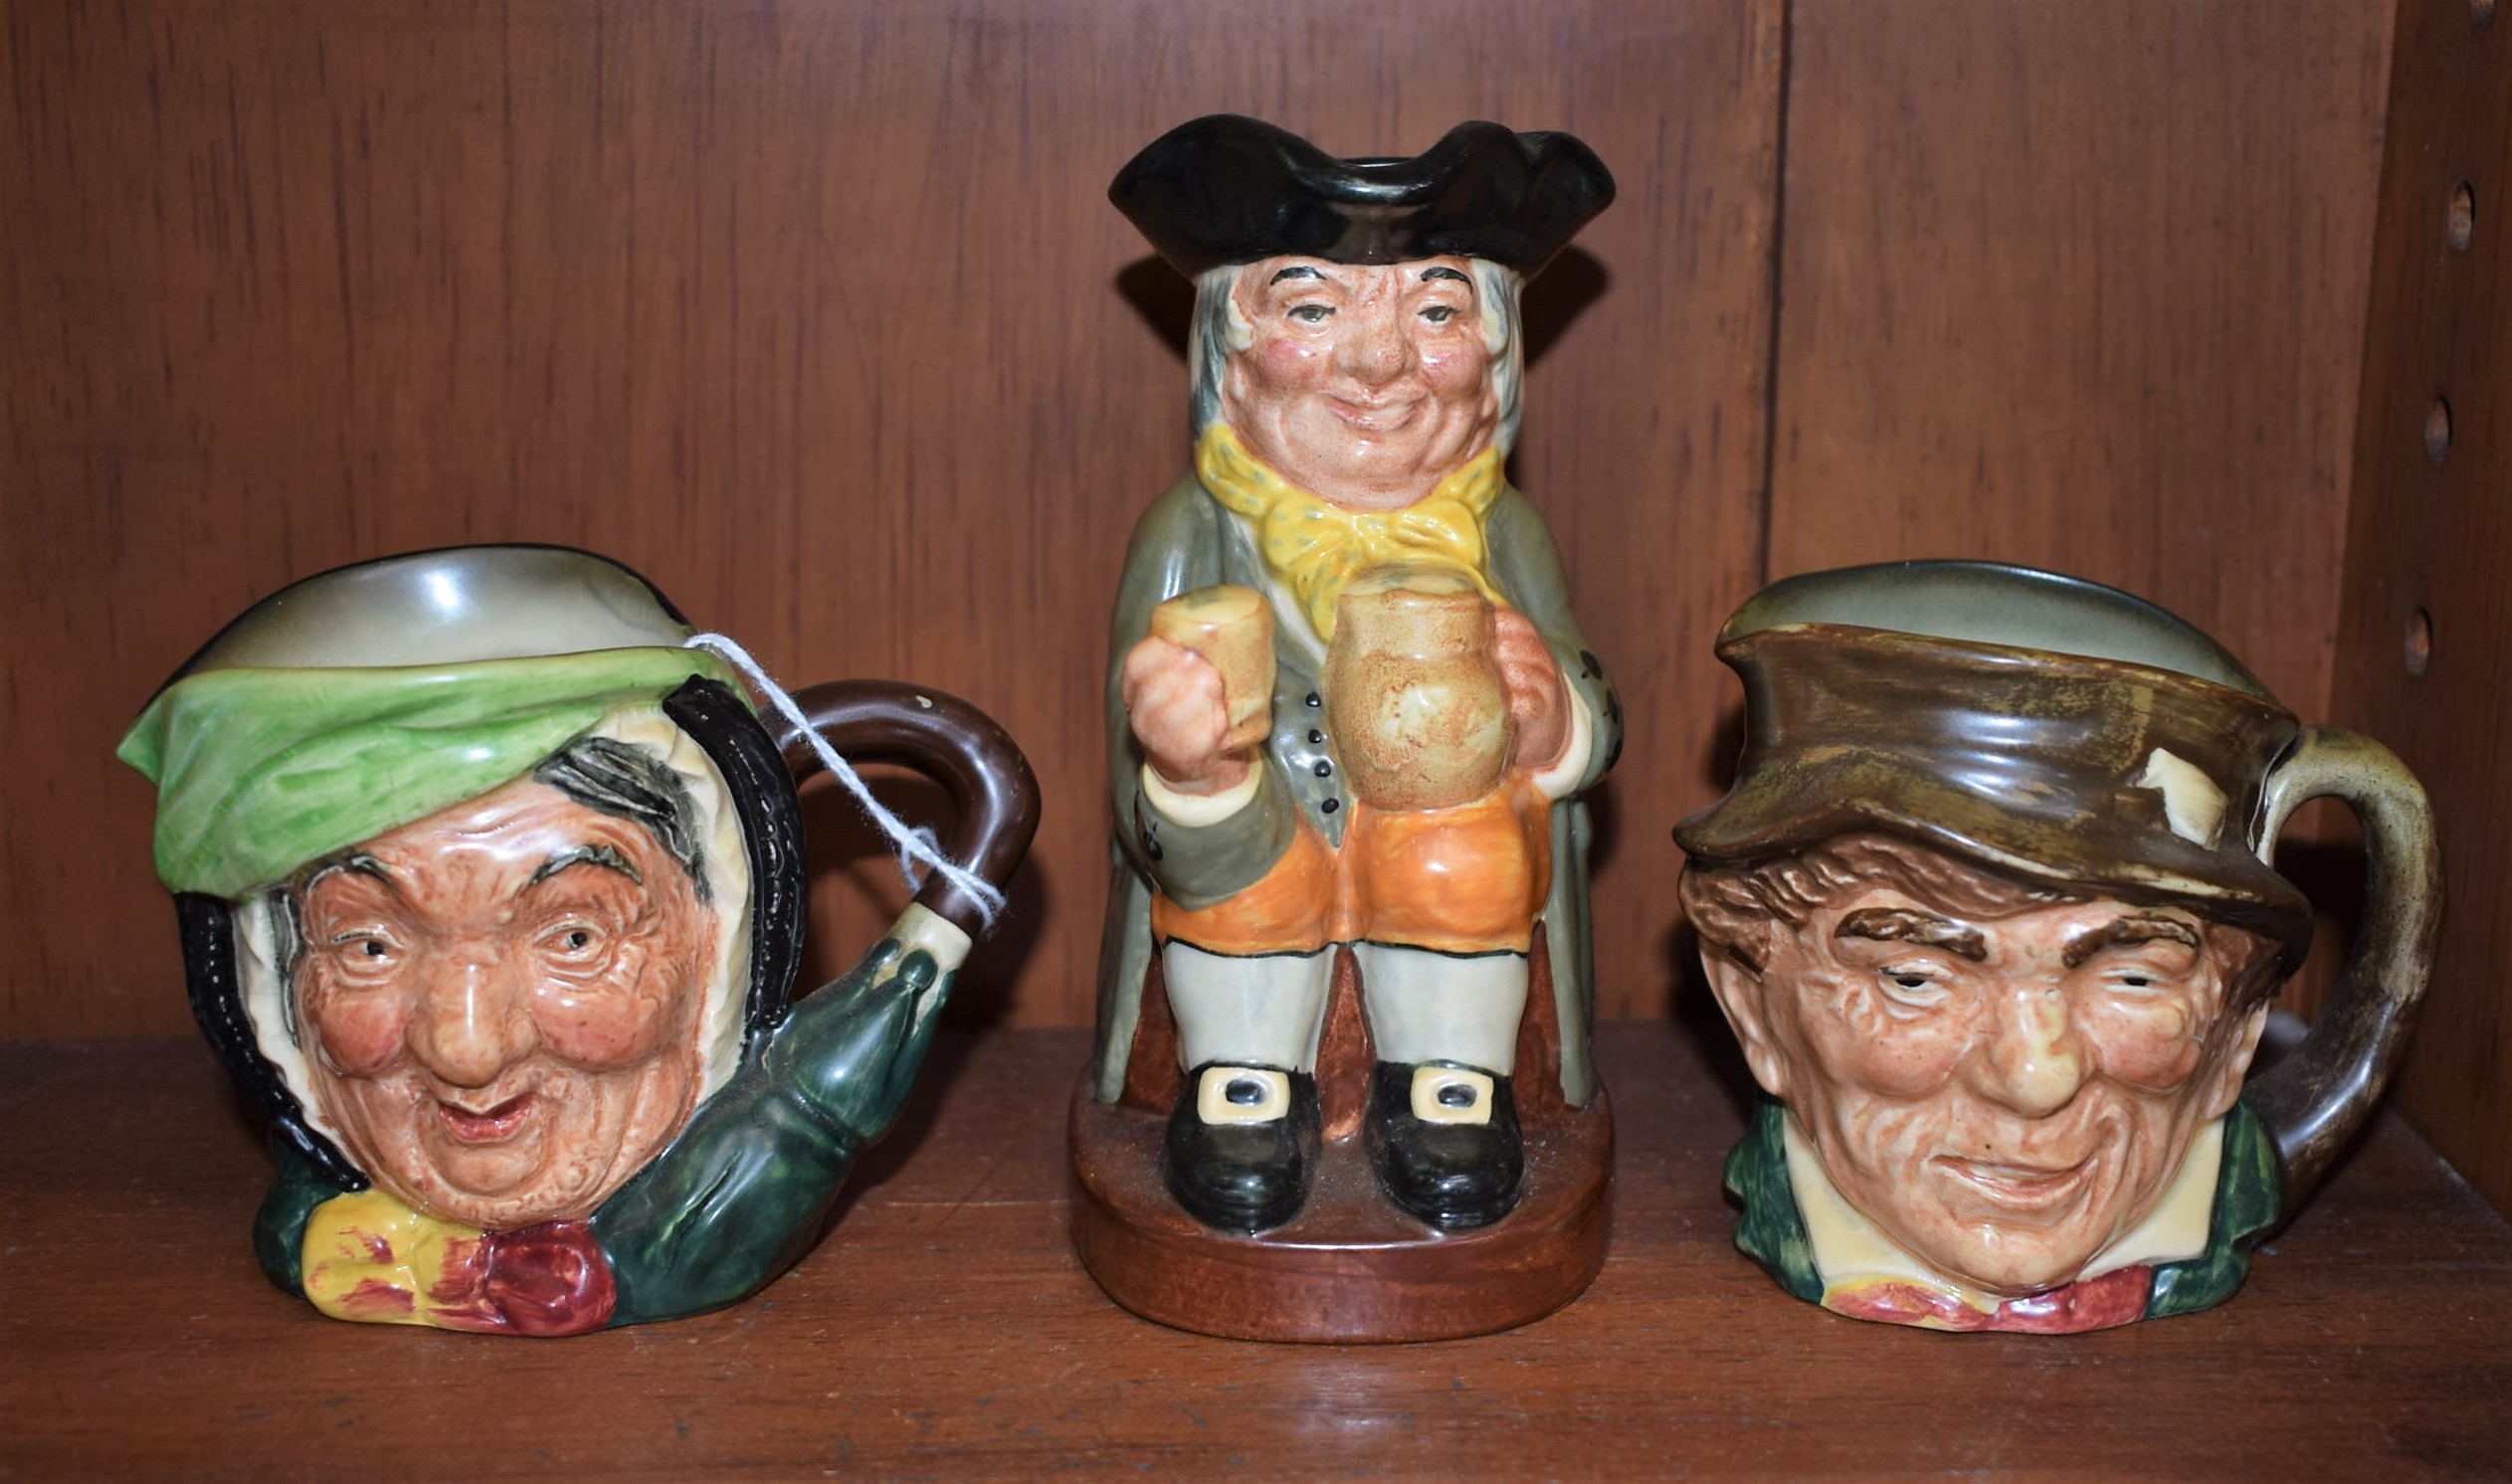 A Royal Doulton Toby jug, Happy John; two Royal Doulton character jugs,